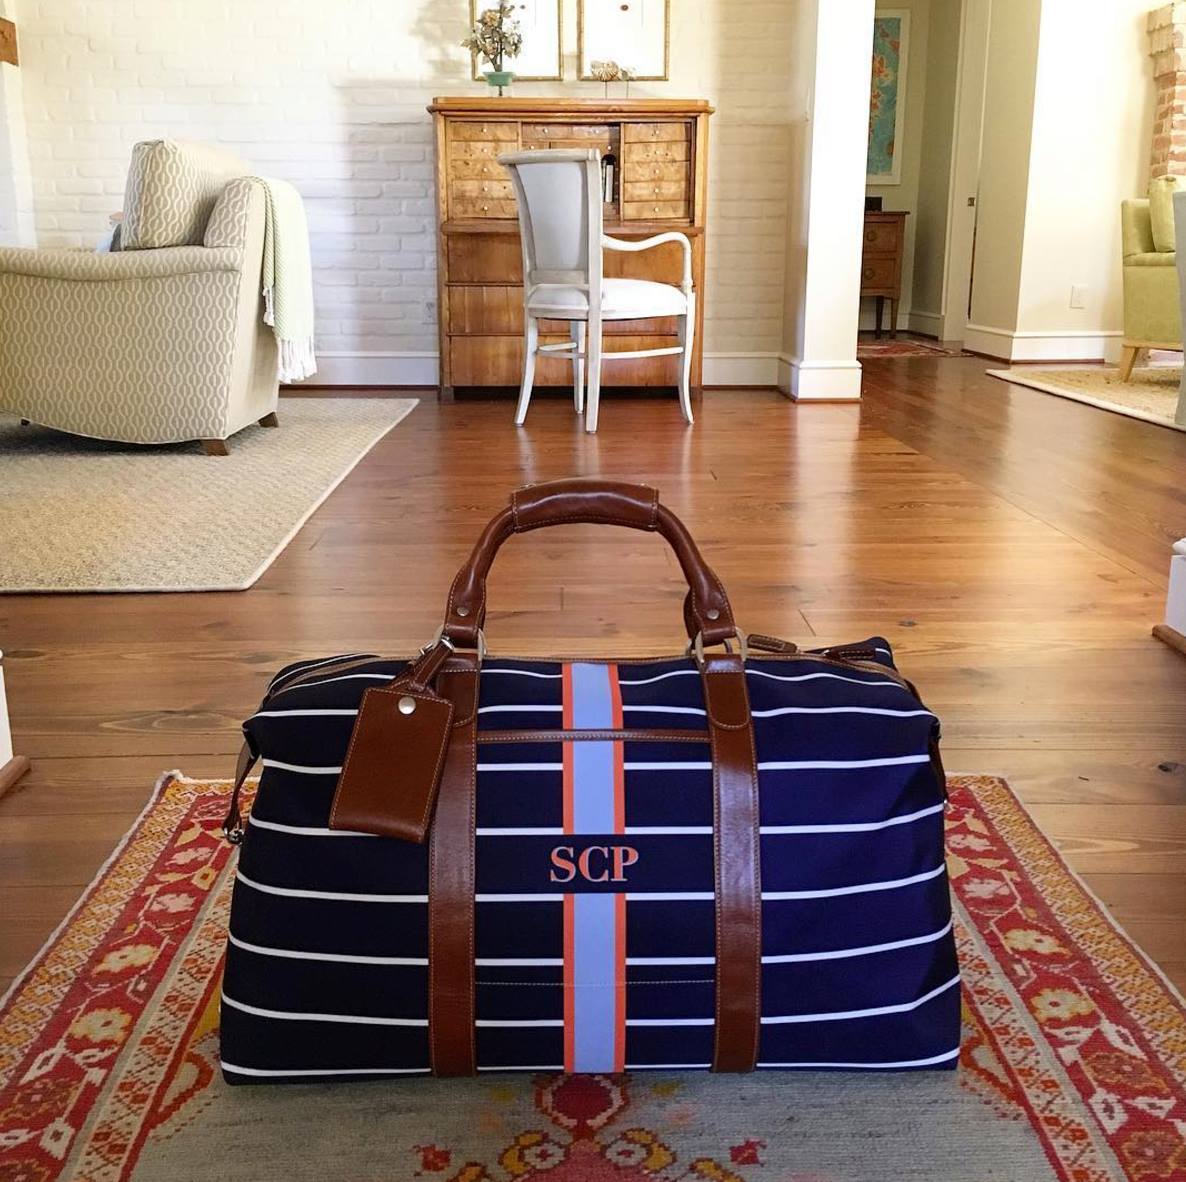 Luxury personalized weekender bag for her, styled for luxury weekender elegance